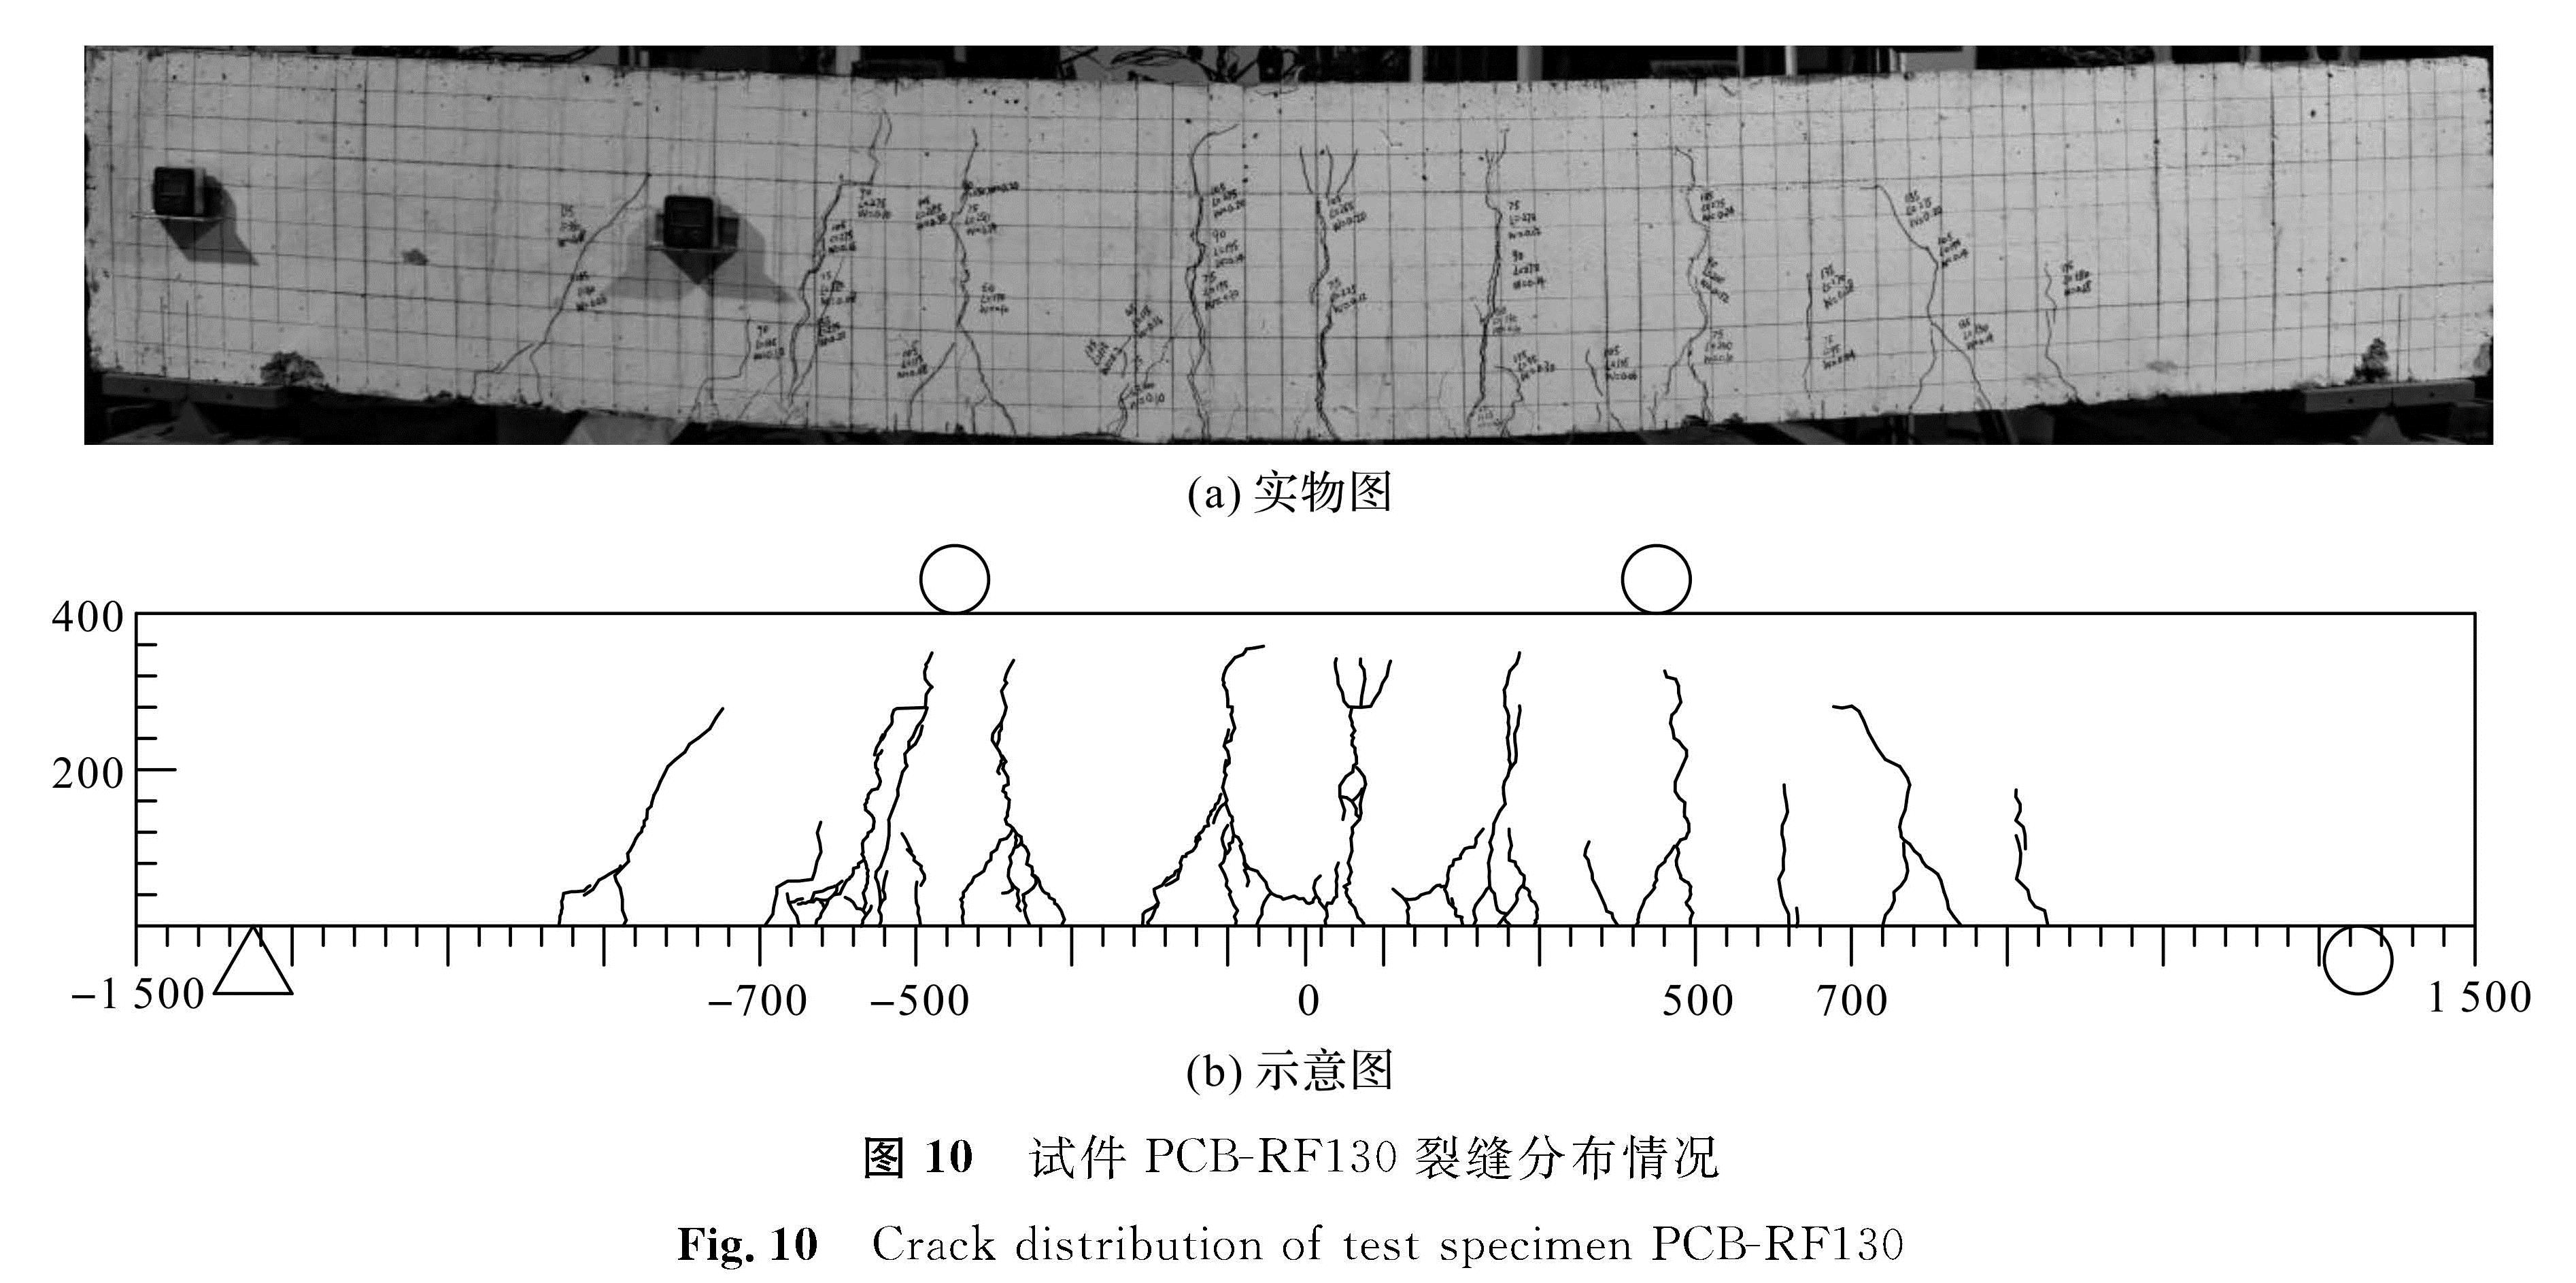 图 10 试件PCB-RF130裂缝分布情况<br/>Fig.10 Crack distribution of test specimen PCB-RF130